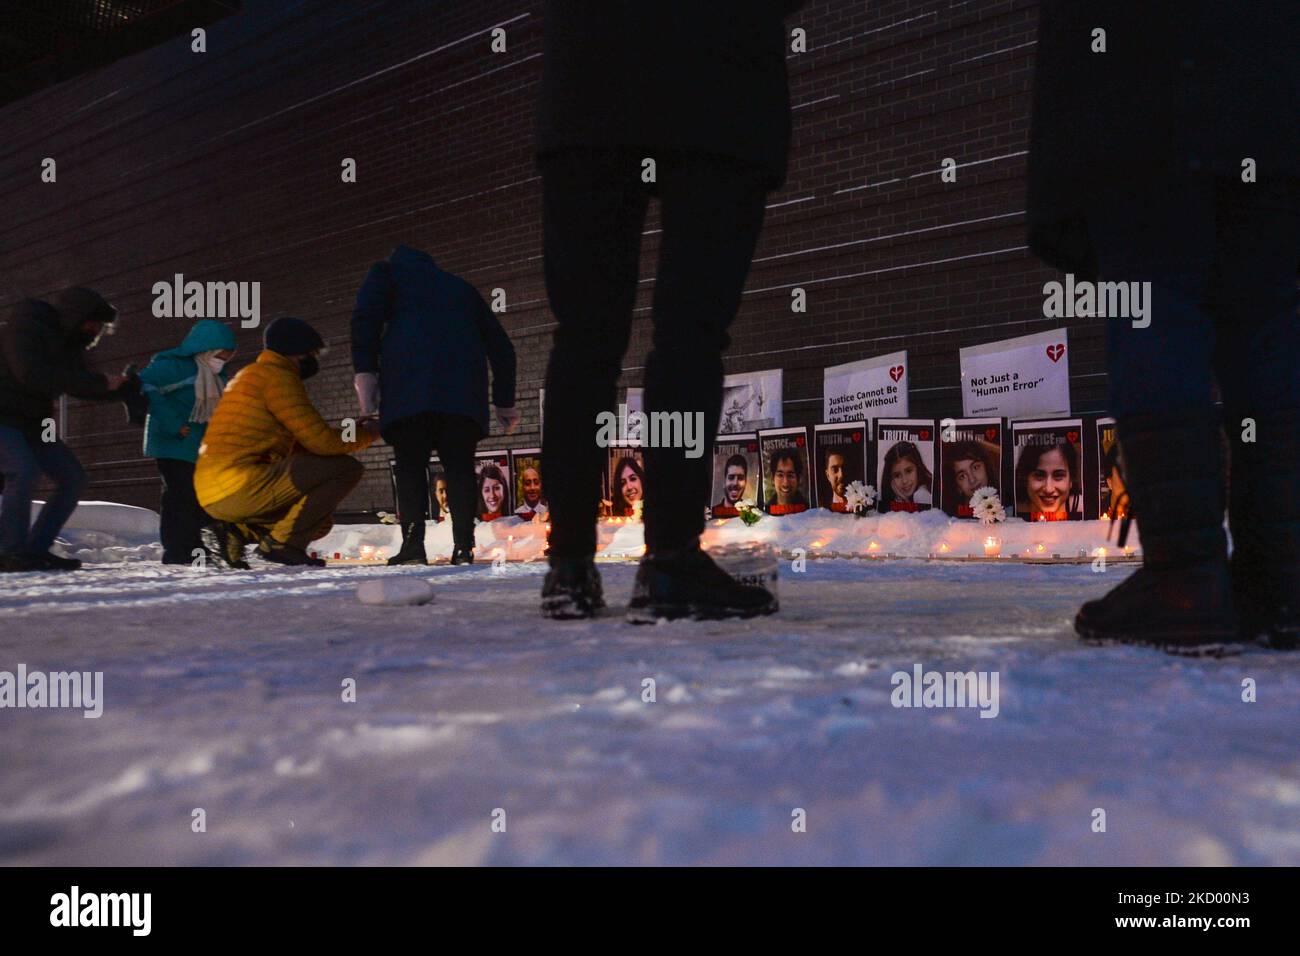 Trauernde bei einer Kerzenlicht-Mahnwache auf der Whyte Avenue in Edmonton anlässlich des zweijährigen Jubiläums des Abwinnens von Flug PS752. Am 8. Januar 2020 schoss das iranische Militär den Flug PS752 der Ukrainian Airlines ab, während das Flugzeug den iranischen Luftraum verließ. 176 Passagiere und Besatzung wurden getötet, darunter 57 kanadische Bürger und 29 kanadische ständige Einwohner (darunter 13 Edmontonier). Am Samstag, den 8. Januar 2022, Kanada. (Foto von Artur Widak/NurPhoto) Stockfoto